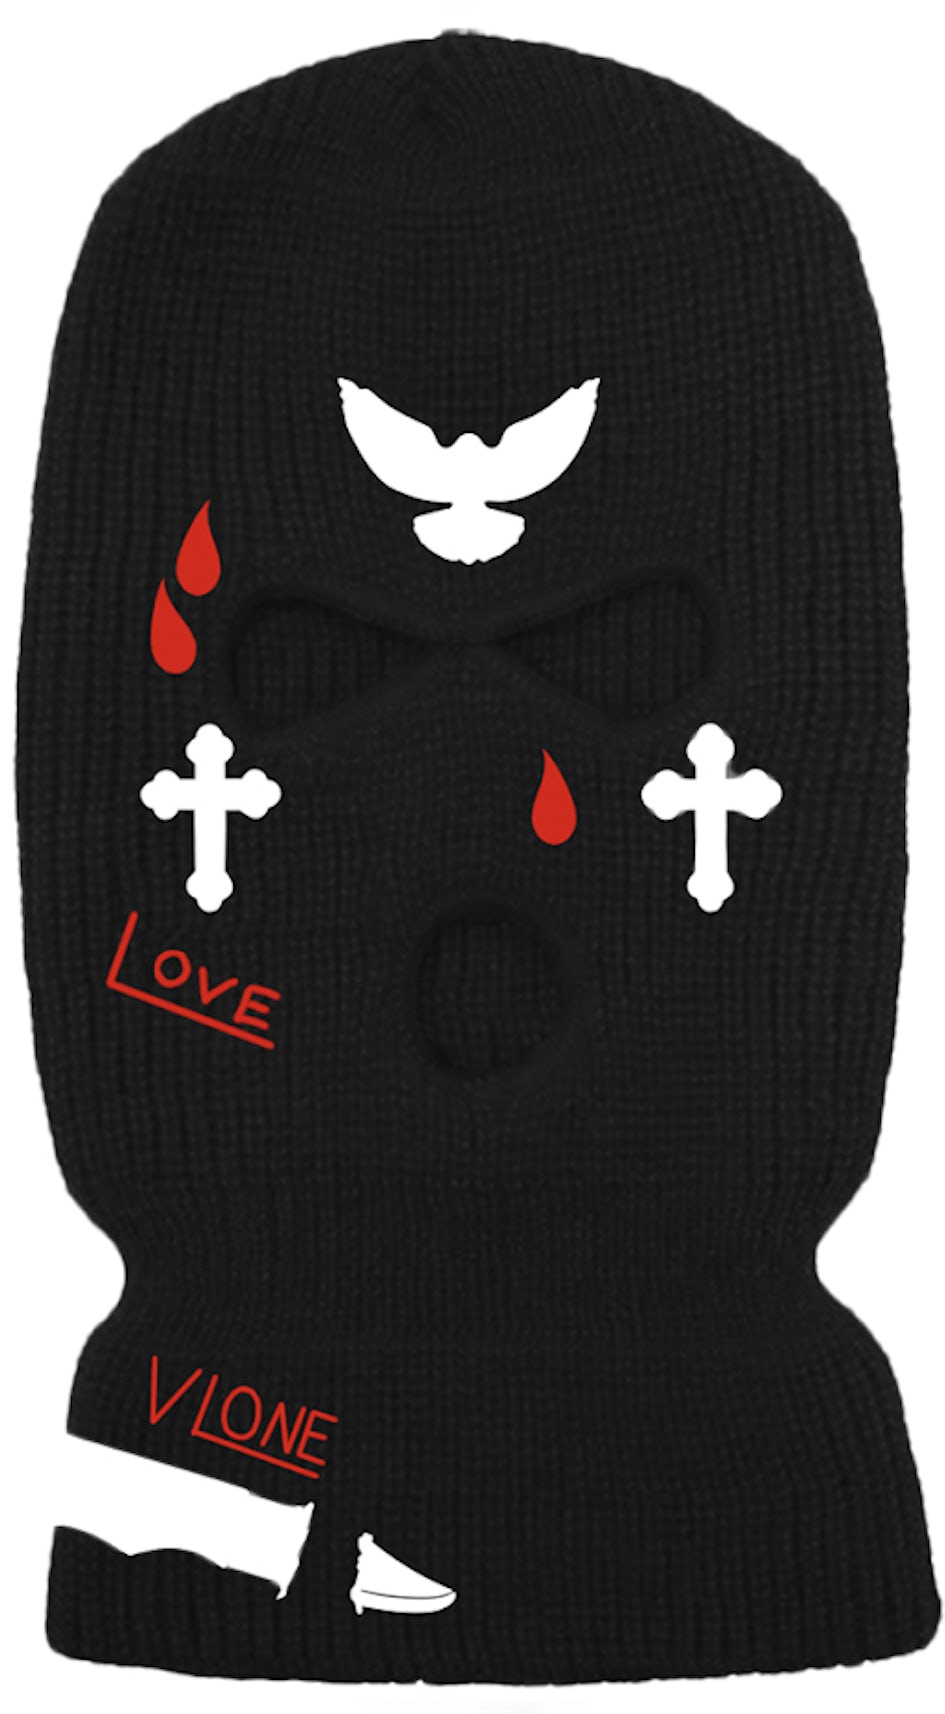 Juice Wrld X Vlone Circle Ski Mask Black for Women